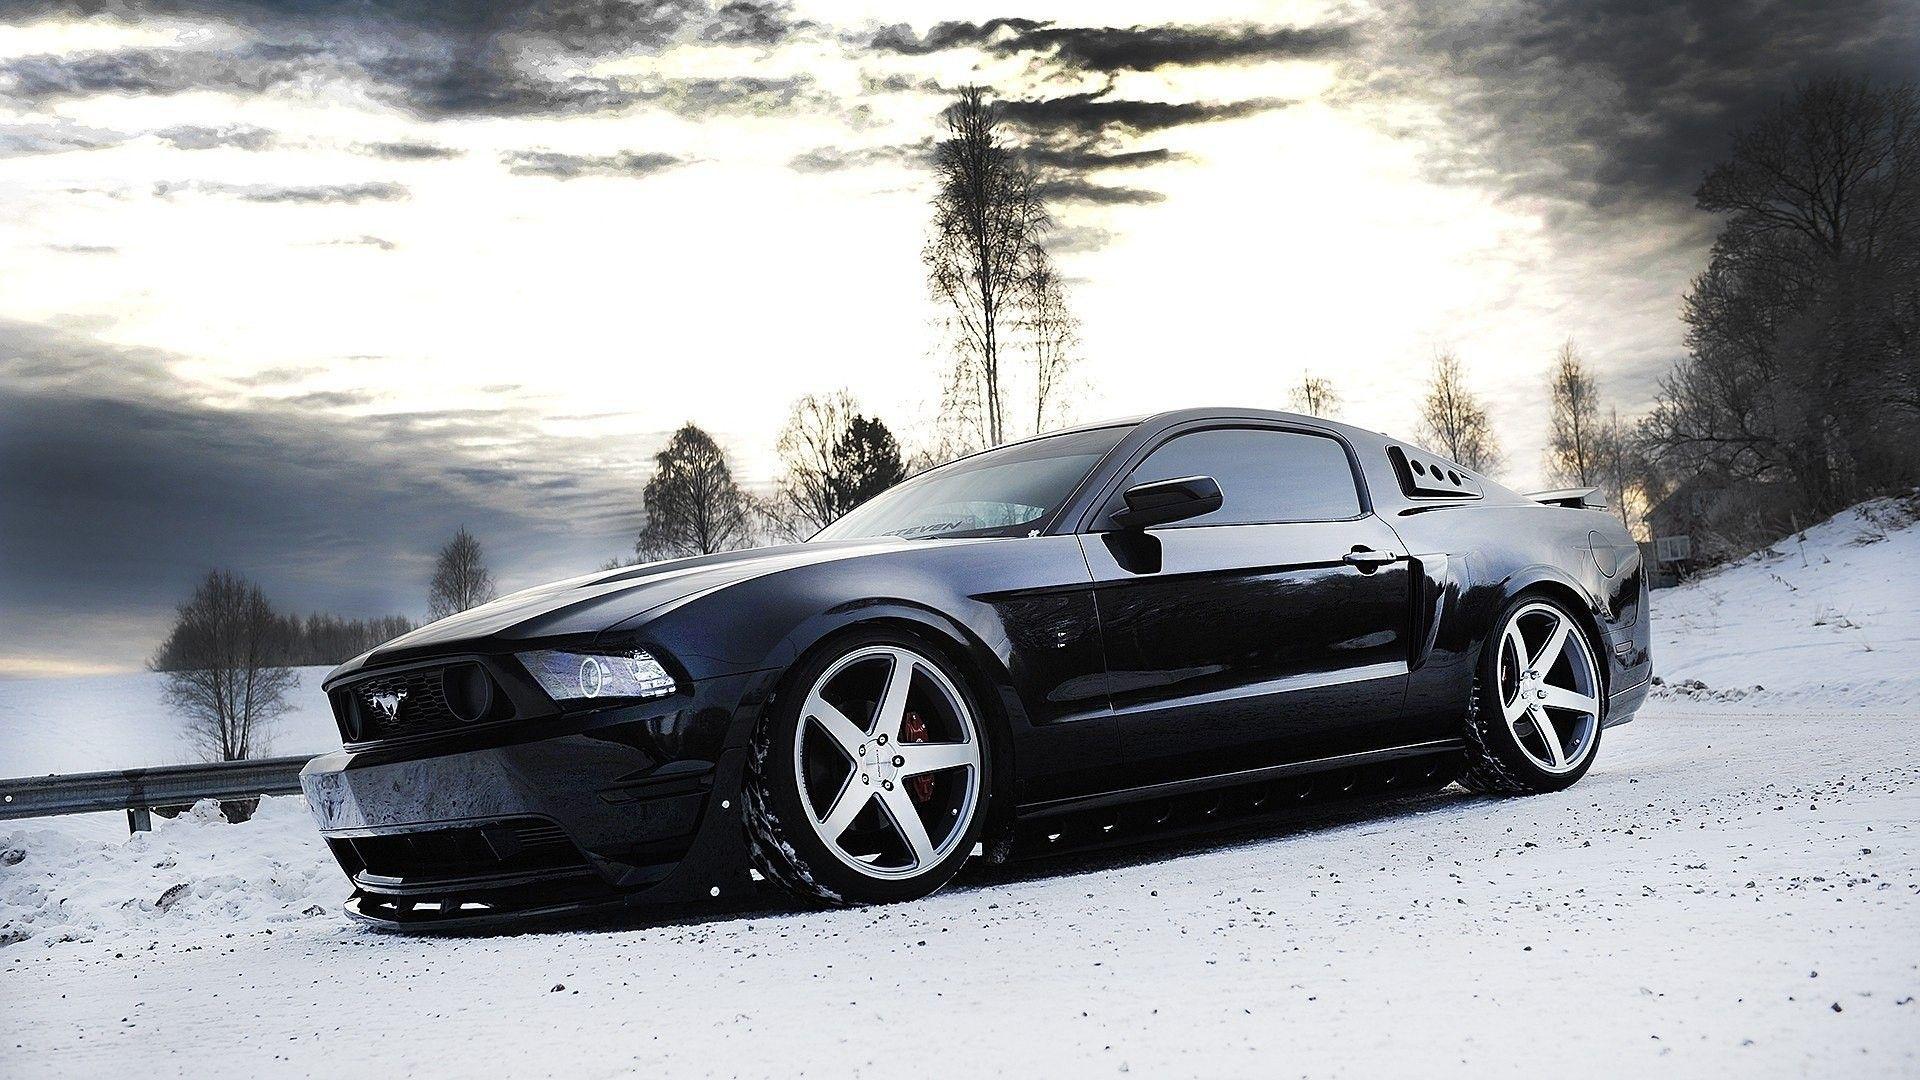 Mustang Wallpaper HD #C8l. Cars. Mustang, Wallpaper